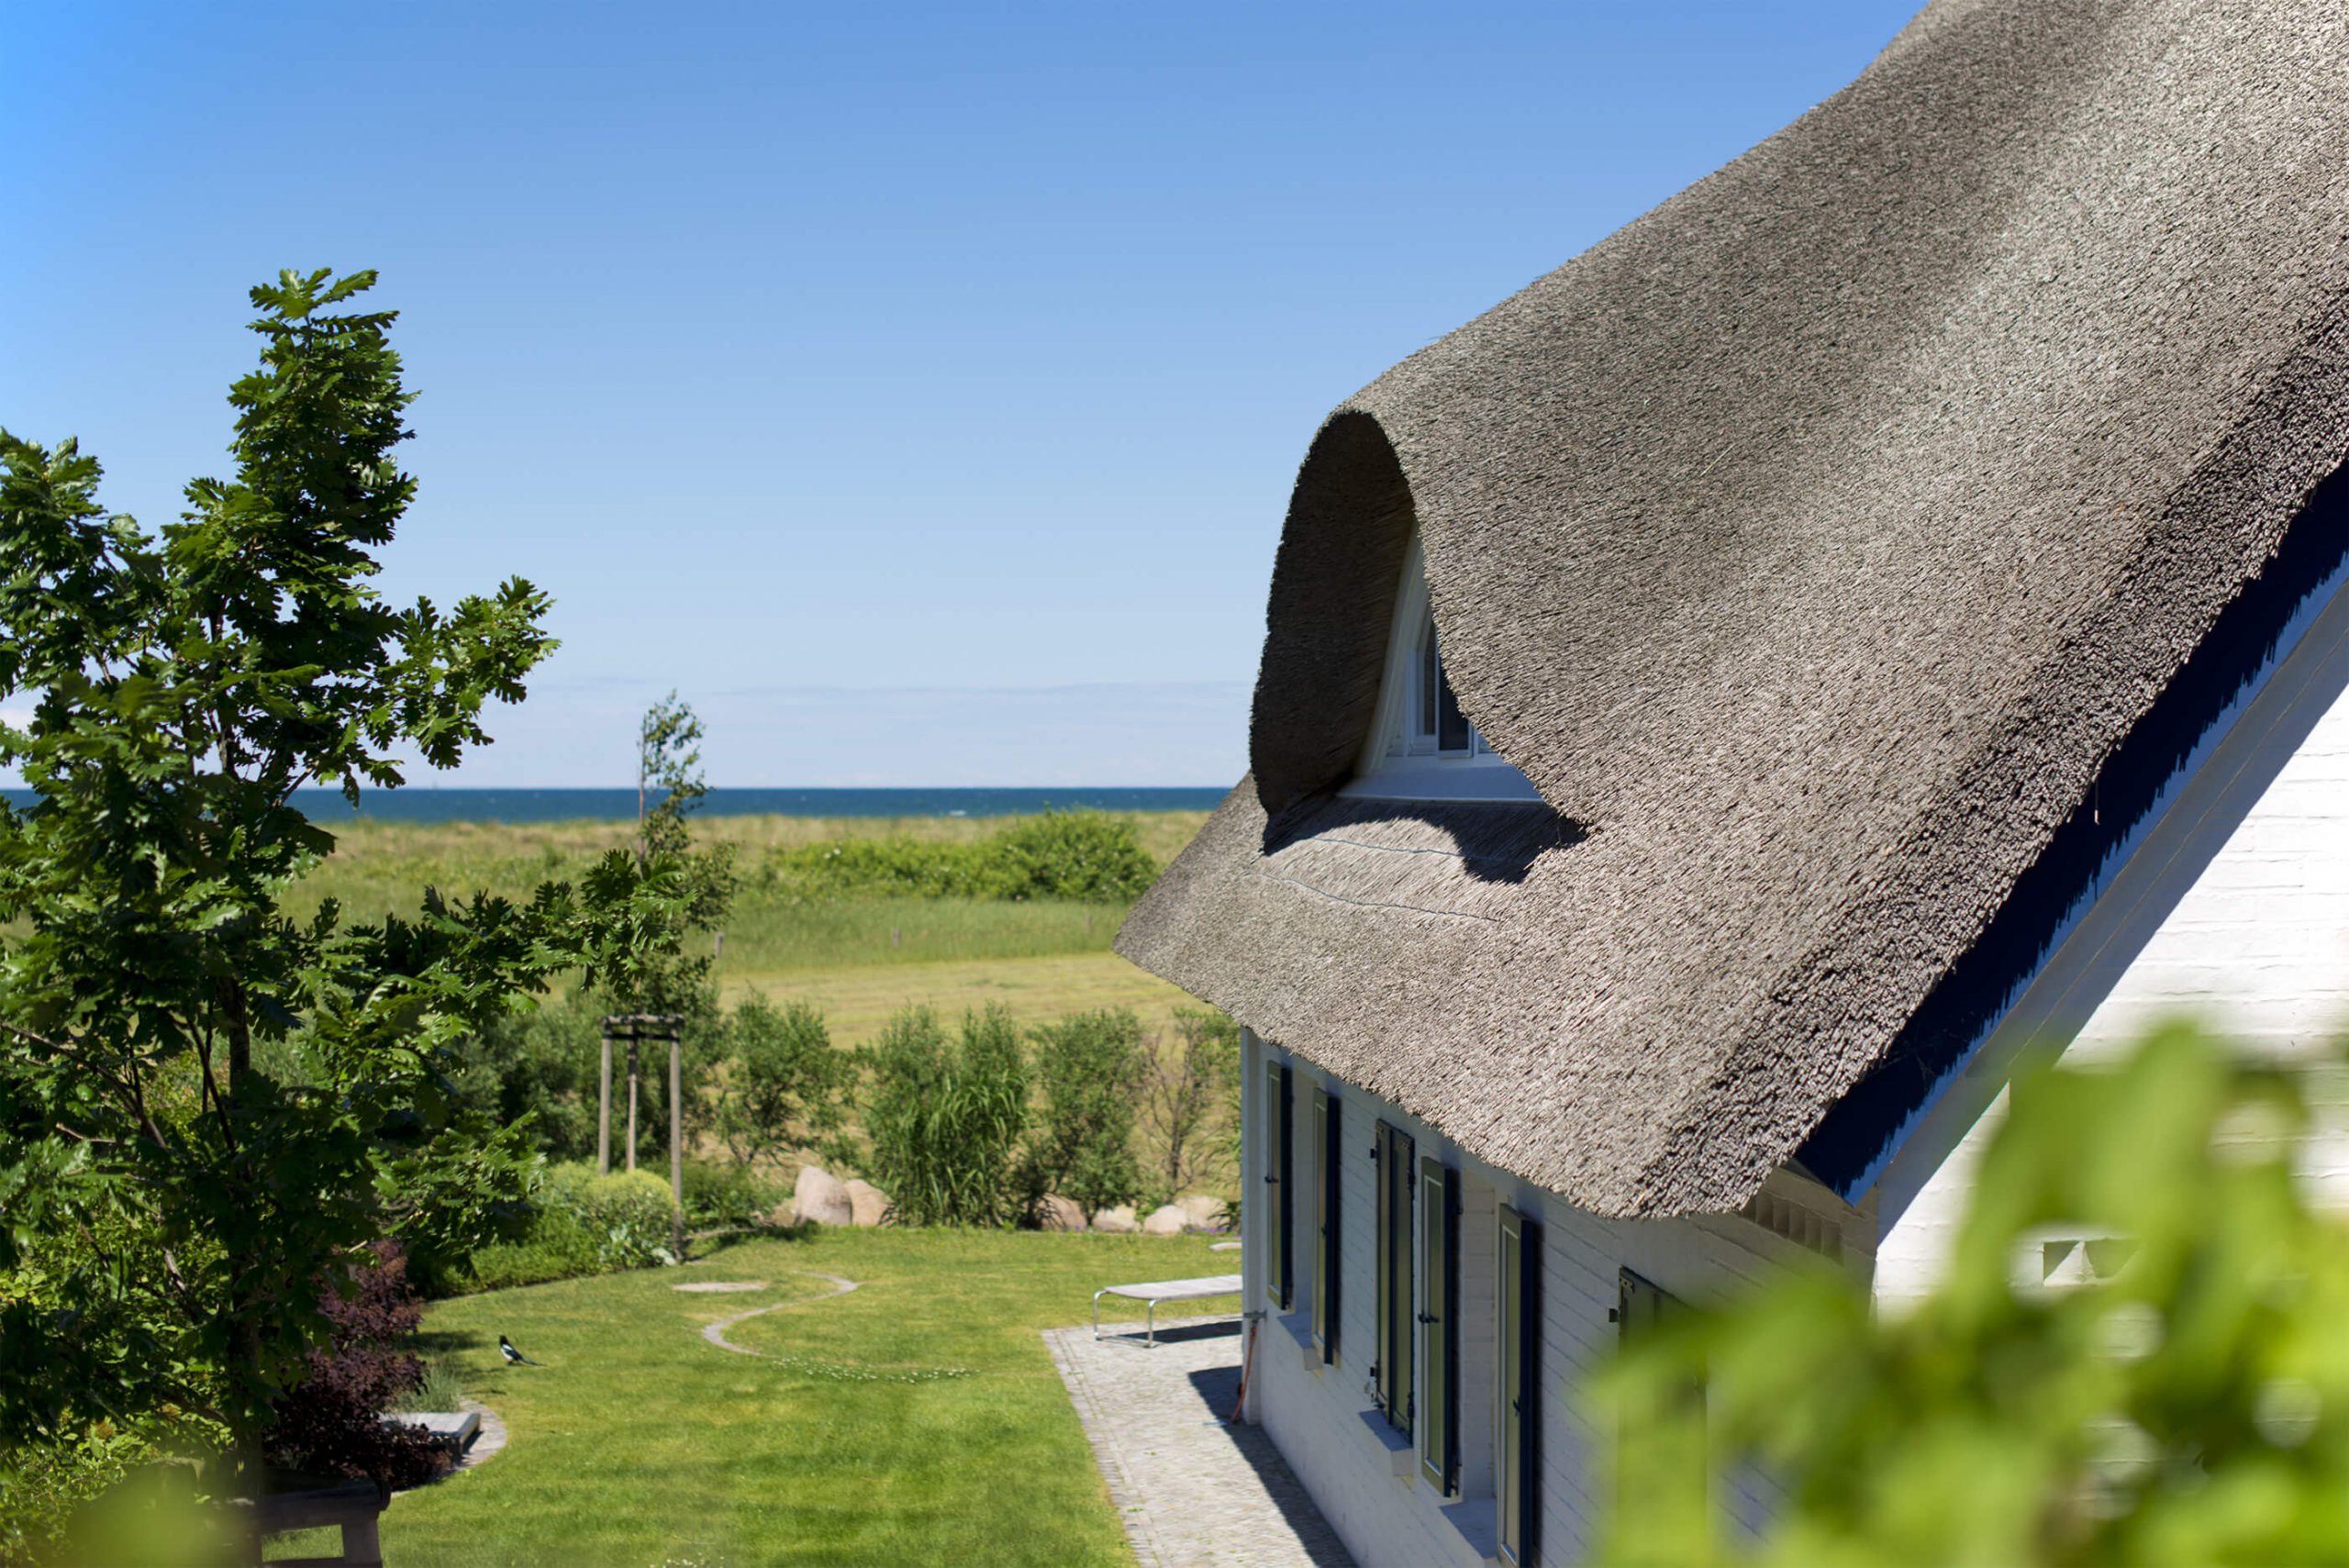 Huis met rieten dak verzekeren